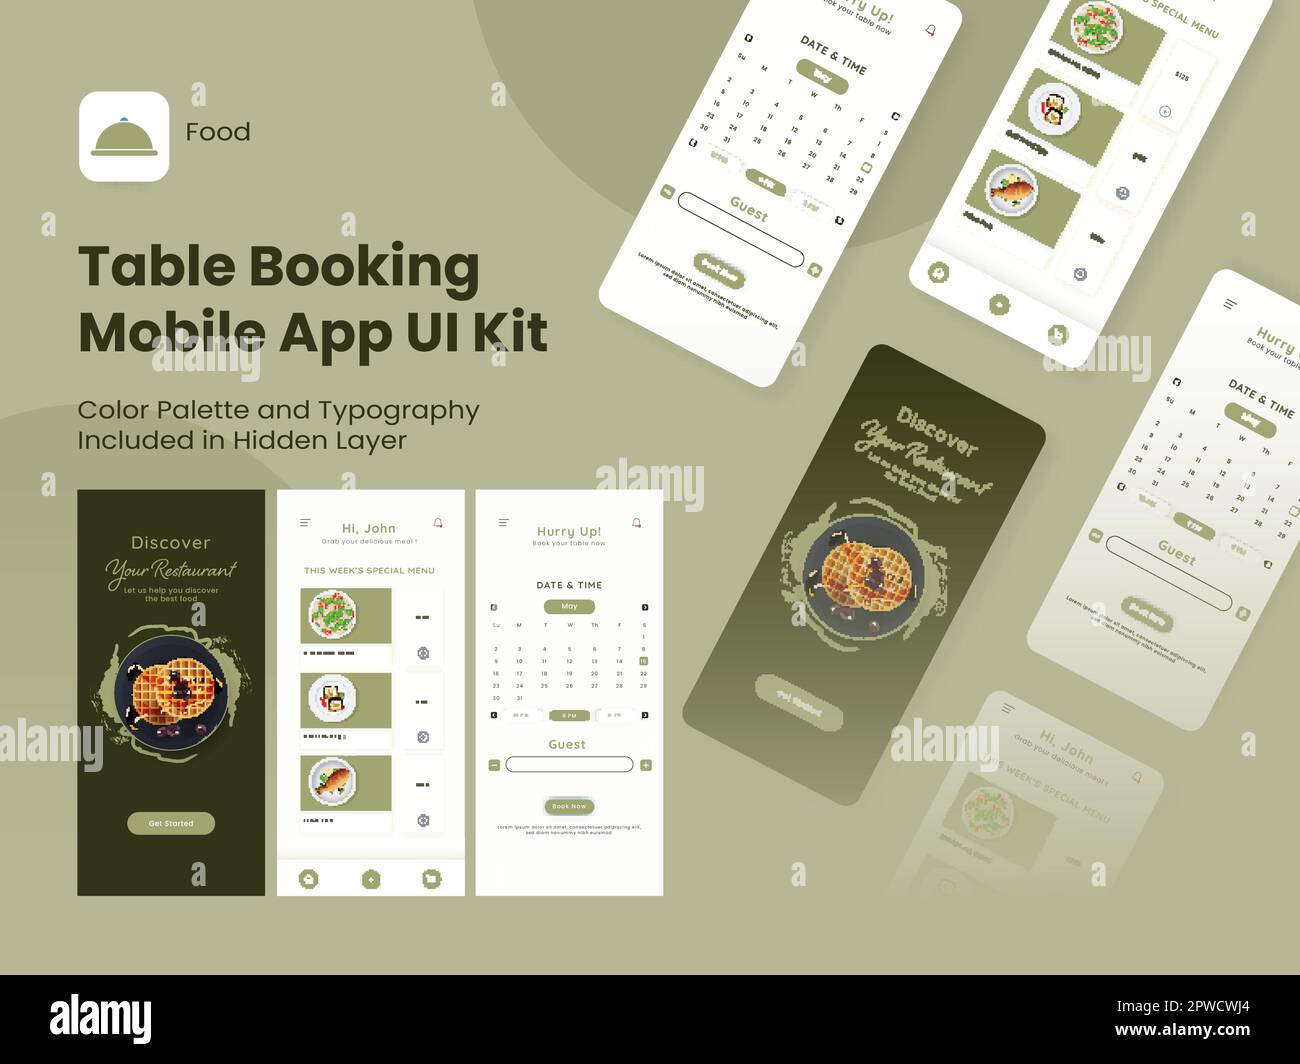 Table Booking Mobile App UI Kit, einschließlich als Anmeldung, Anmeldung, Menü und Details zu reservierten Tischen für Responsive Website. Stock Vektor